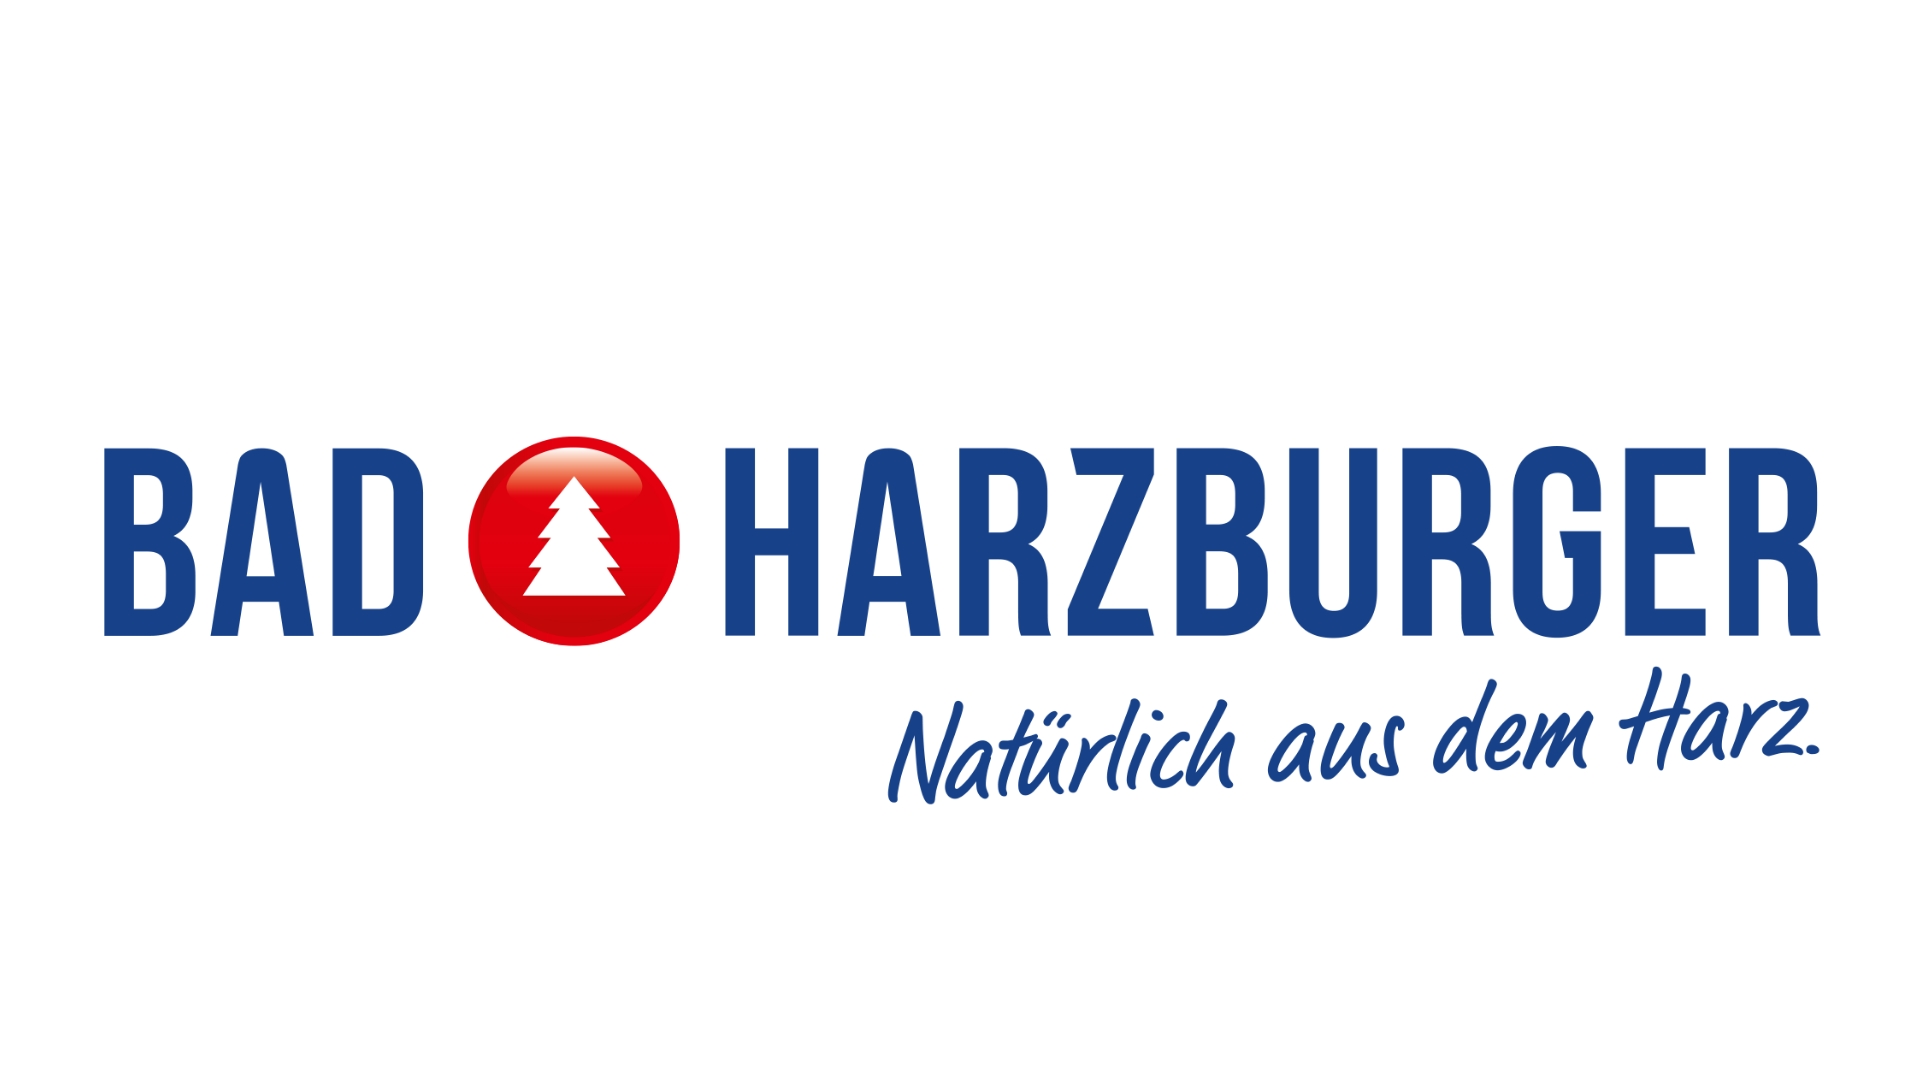 Bad Harzburger